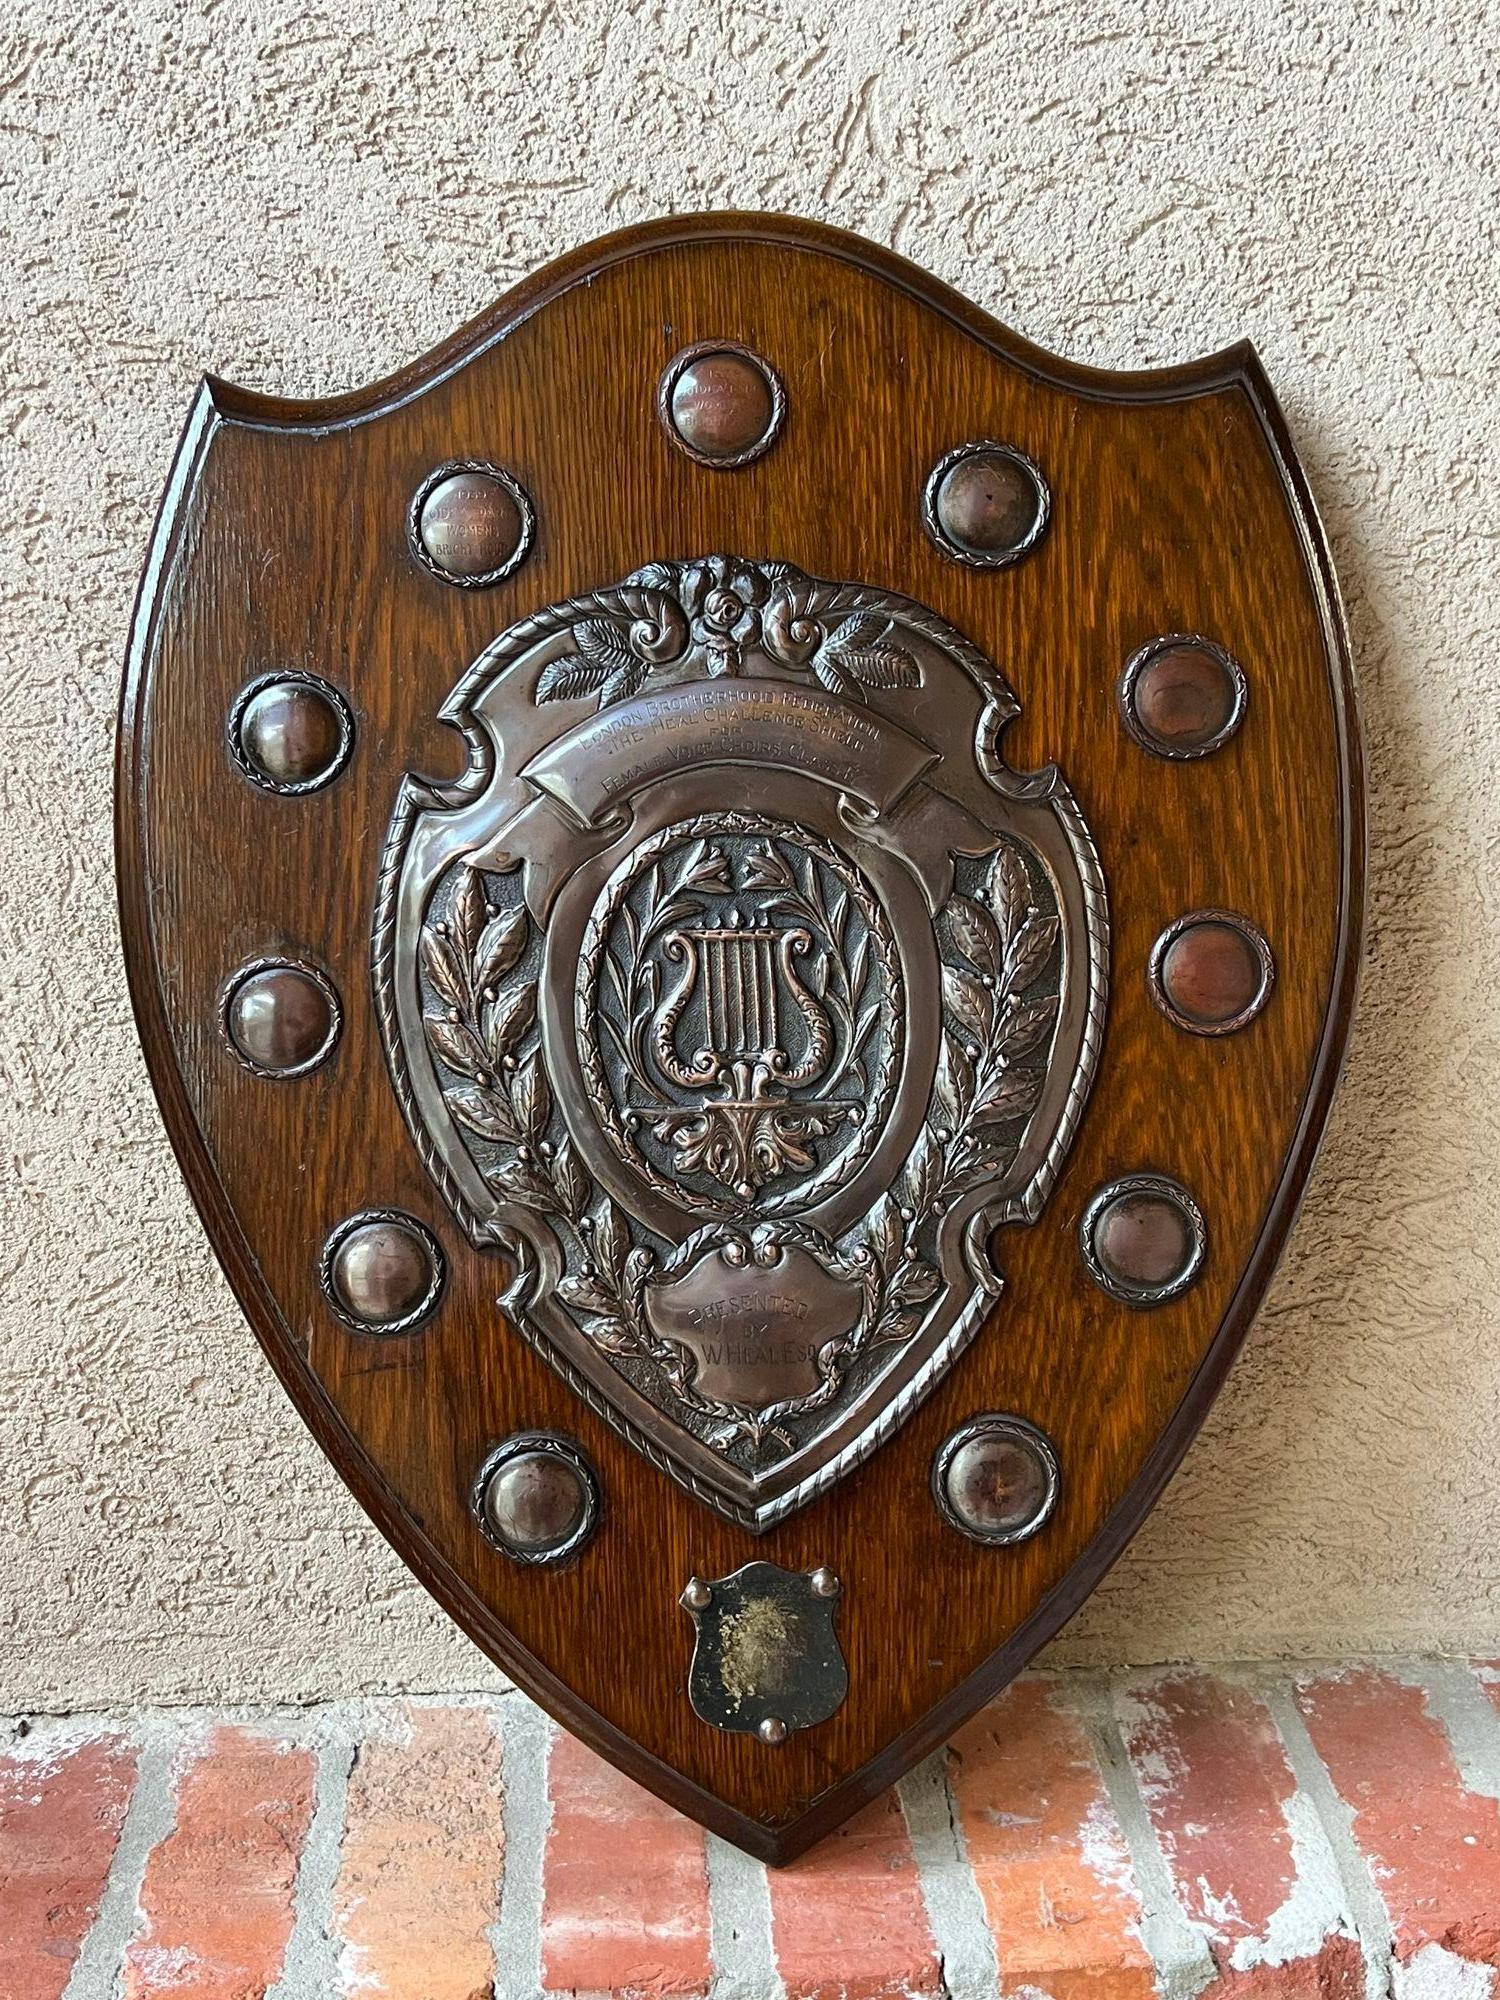 Other Antique English Choir Trophy Award Plaque Copper Repousse c1938 Lyre Harp For Sale